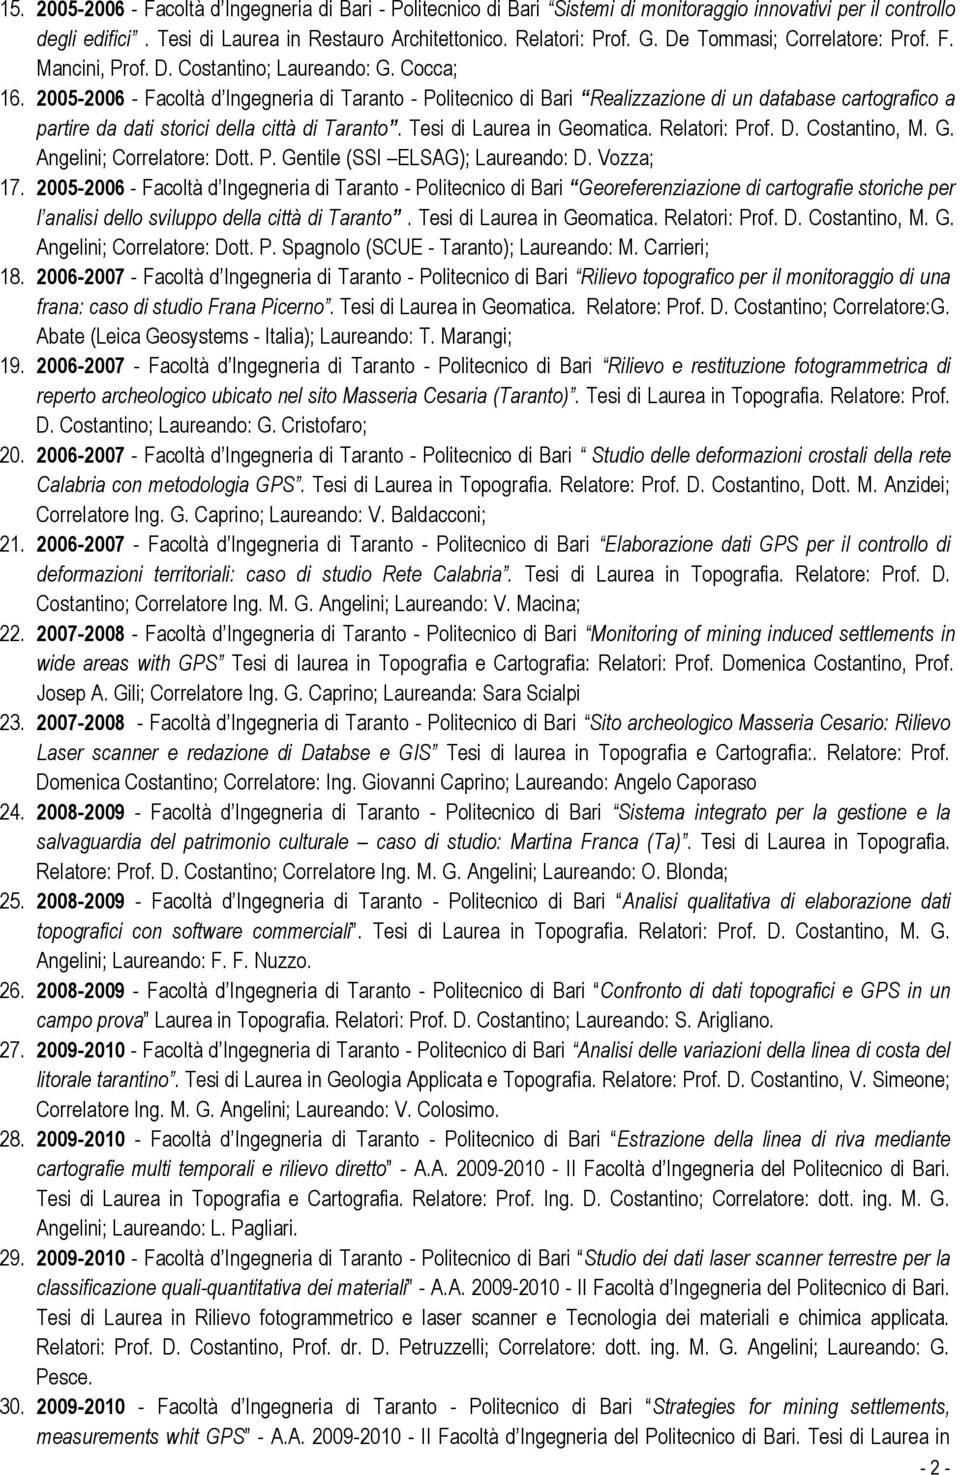 2005-2006 - Facoltà d Ingegneria di Taranto - Politecnico di Bari Realizzazione di un database cartografico a partire da dati storici della città di Taranto. Tesi di Laurea in Geomatica.